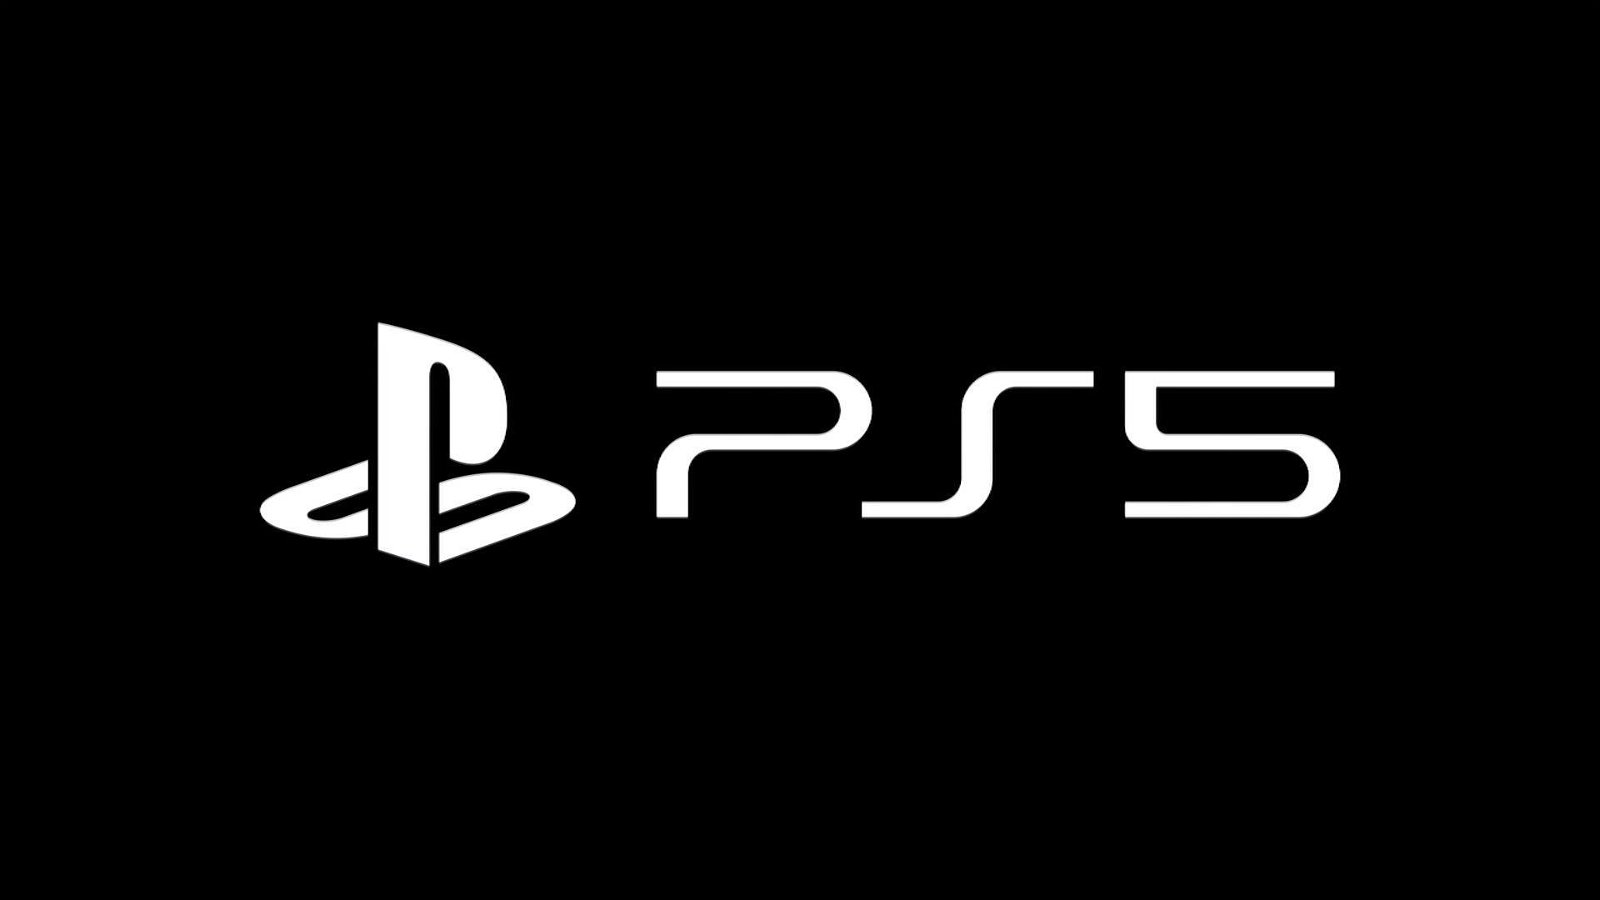 Immagine di PS5: Sony ha registrato il marchio negli Stati Uniti ed altri paesi